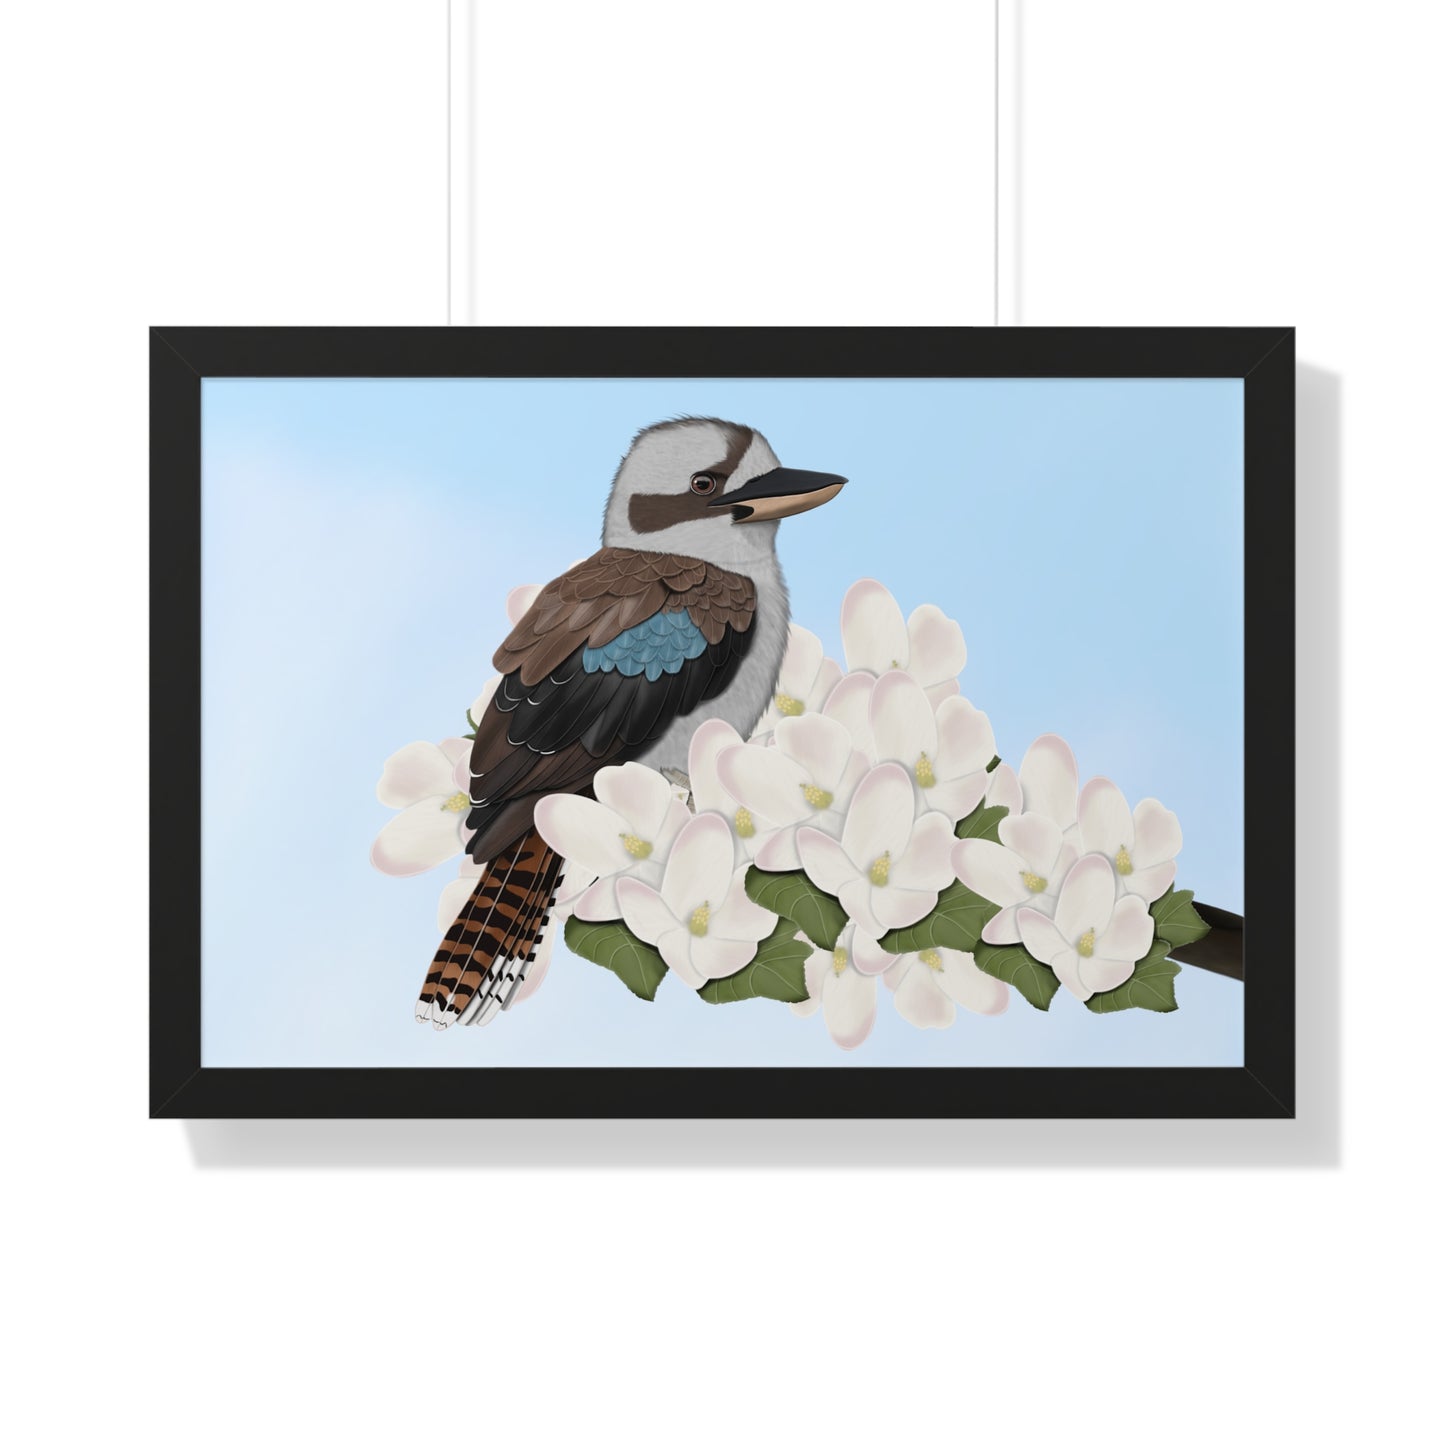 kookaburra bird art framed poster